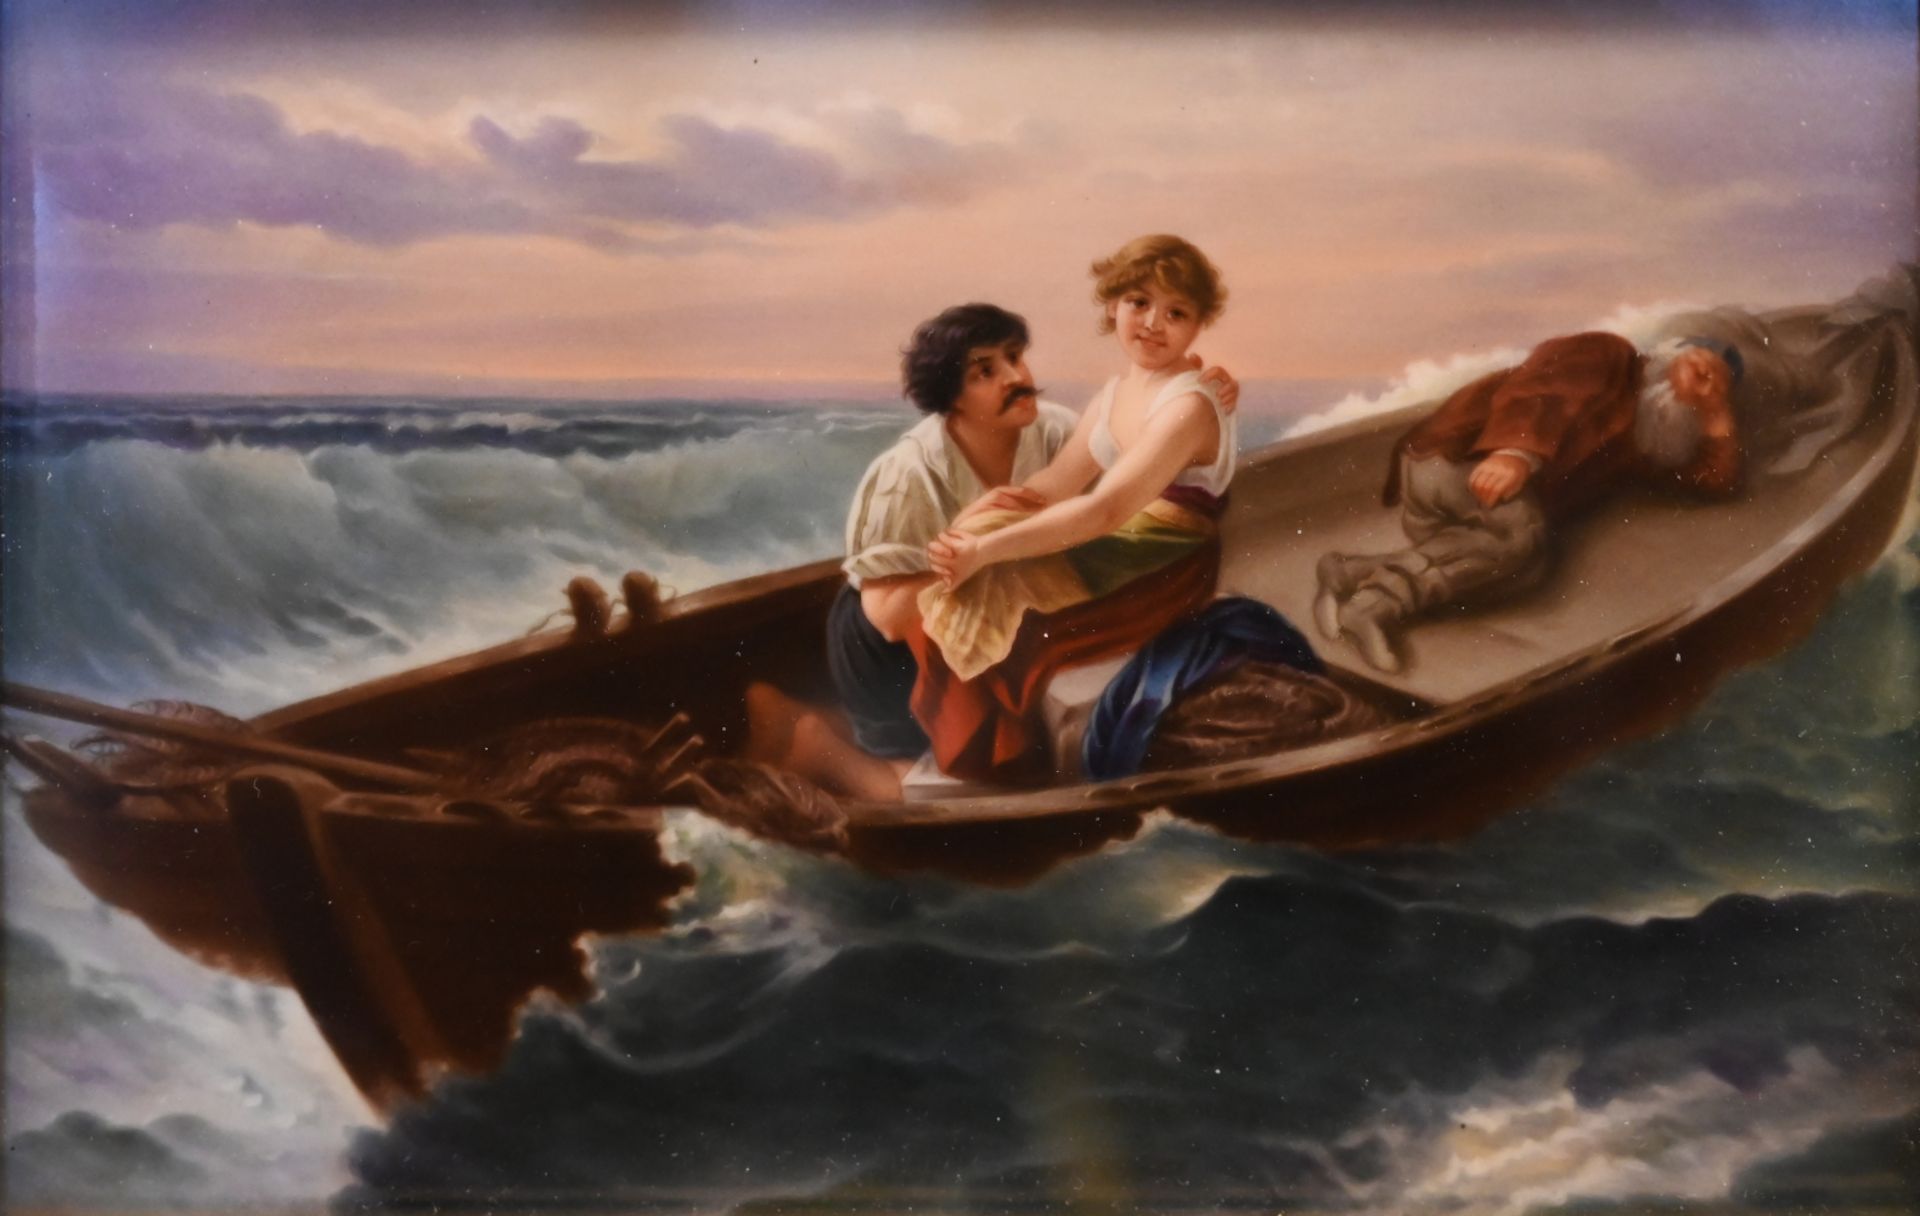 1 Porzellanbild unsign./Kopie nach Wilhelm KRAY (wohl 1828-1889) "Des Meeres und der Liebe Wellen"